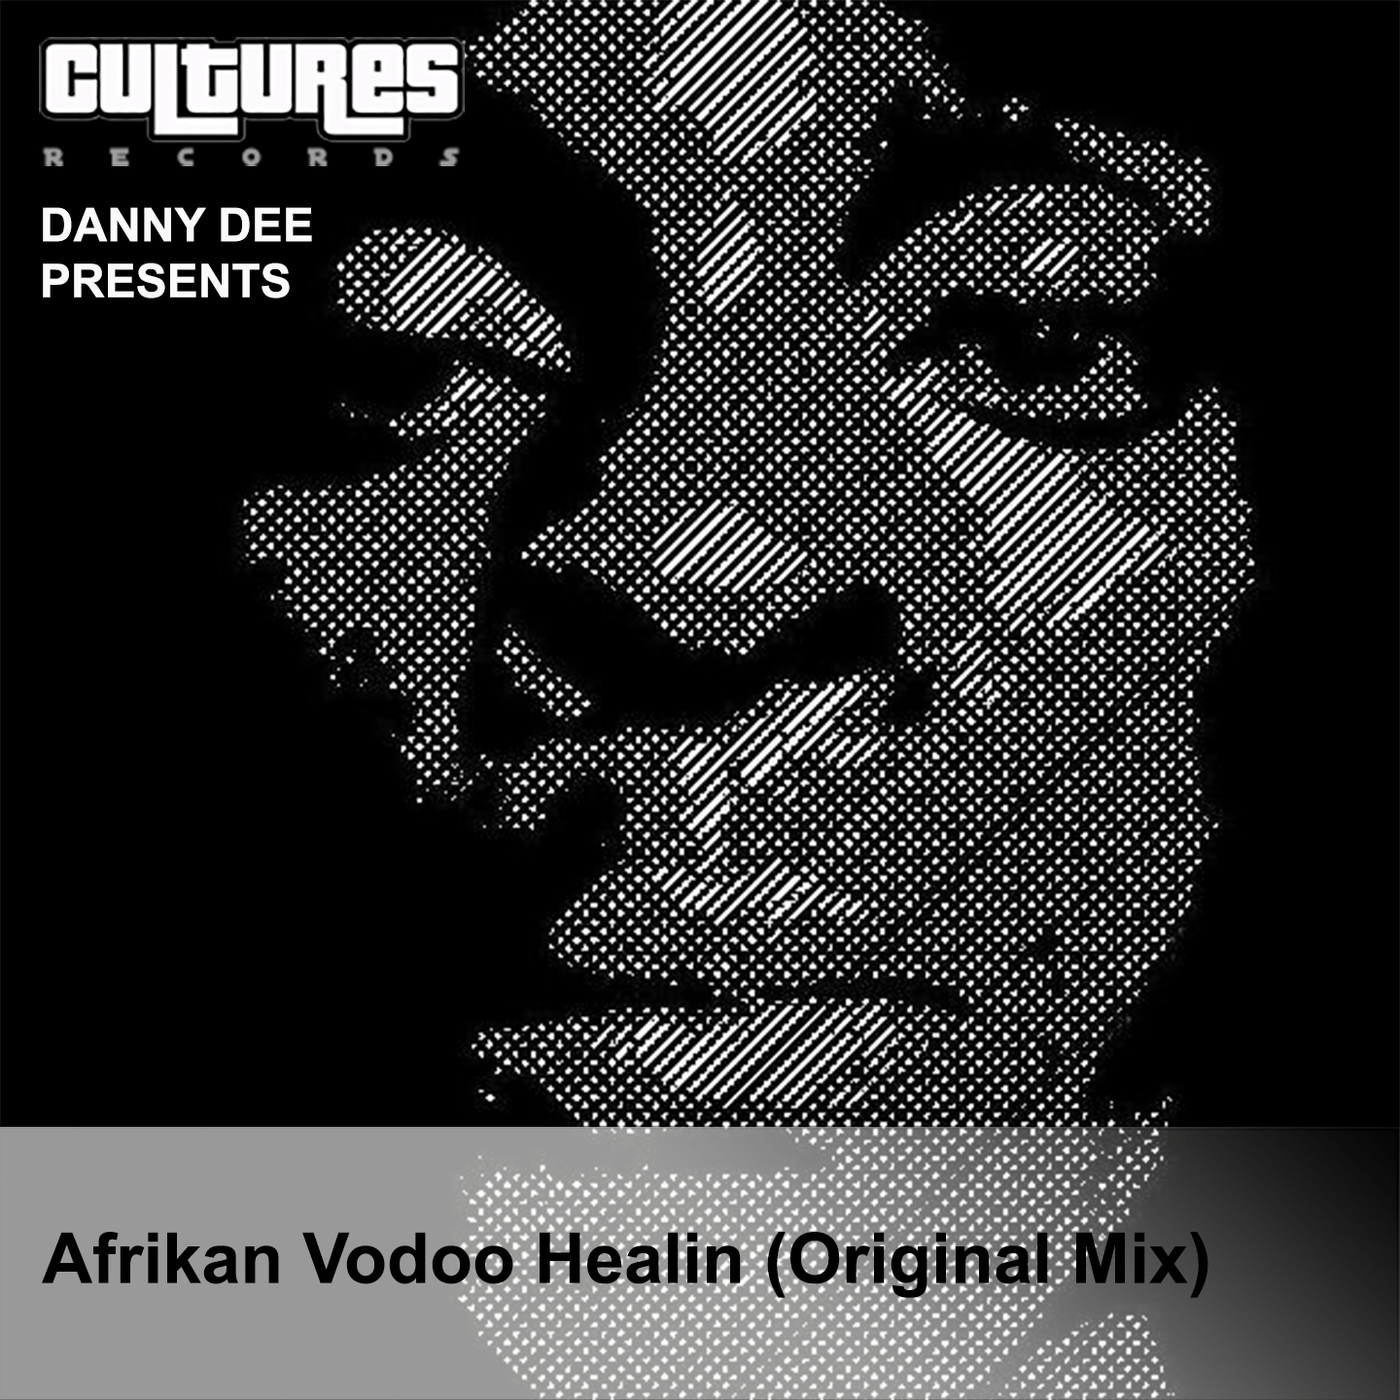 Danny Dee - Afrikan Vodoo Healing / Cultures Records